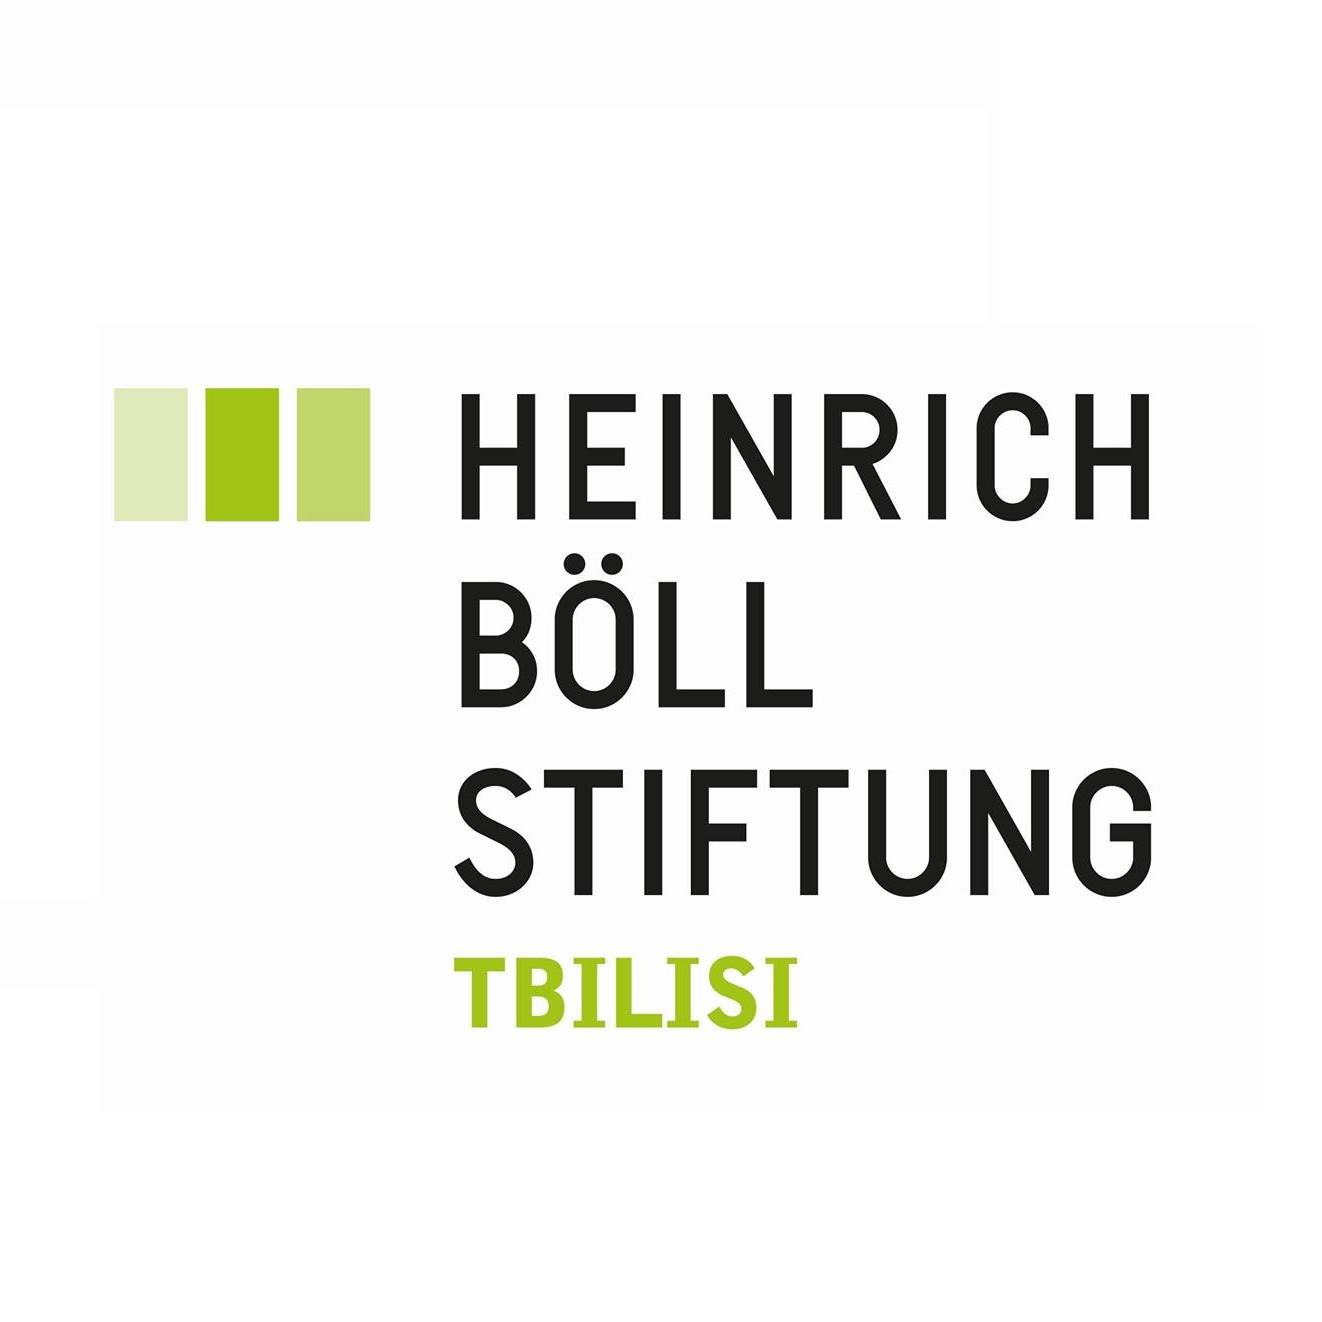 საგარეო და უსაფრთხოების პოლიტიკა (Heinrich Boell Foundation)